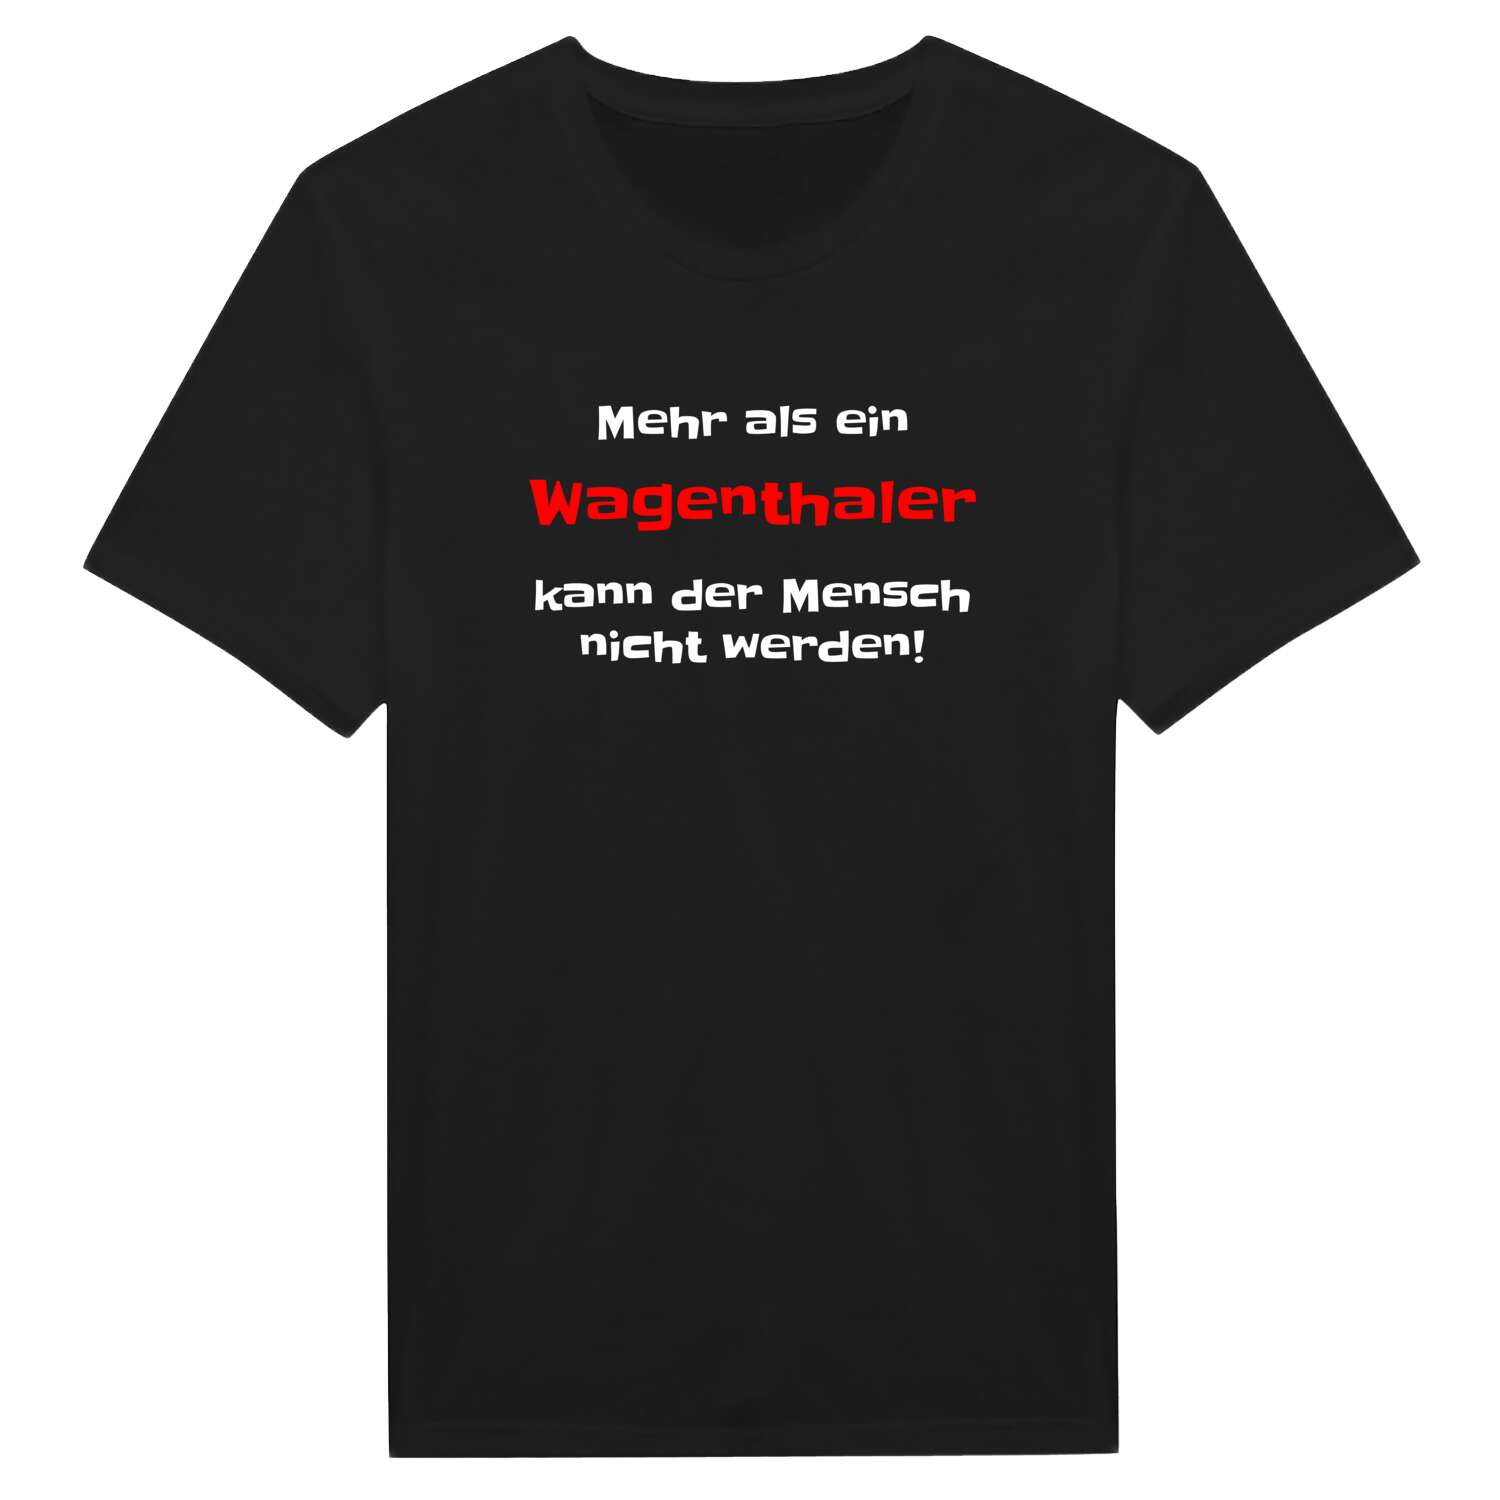 Wagenthal T-Shirt »Mehr als ein«